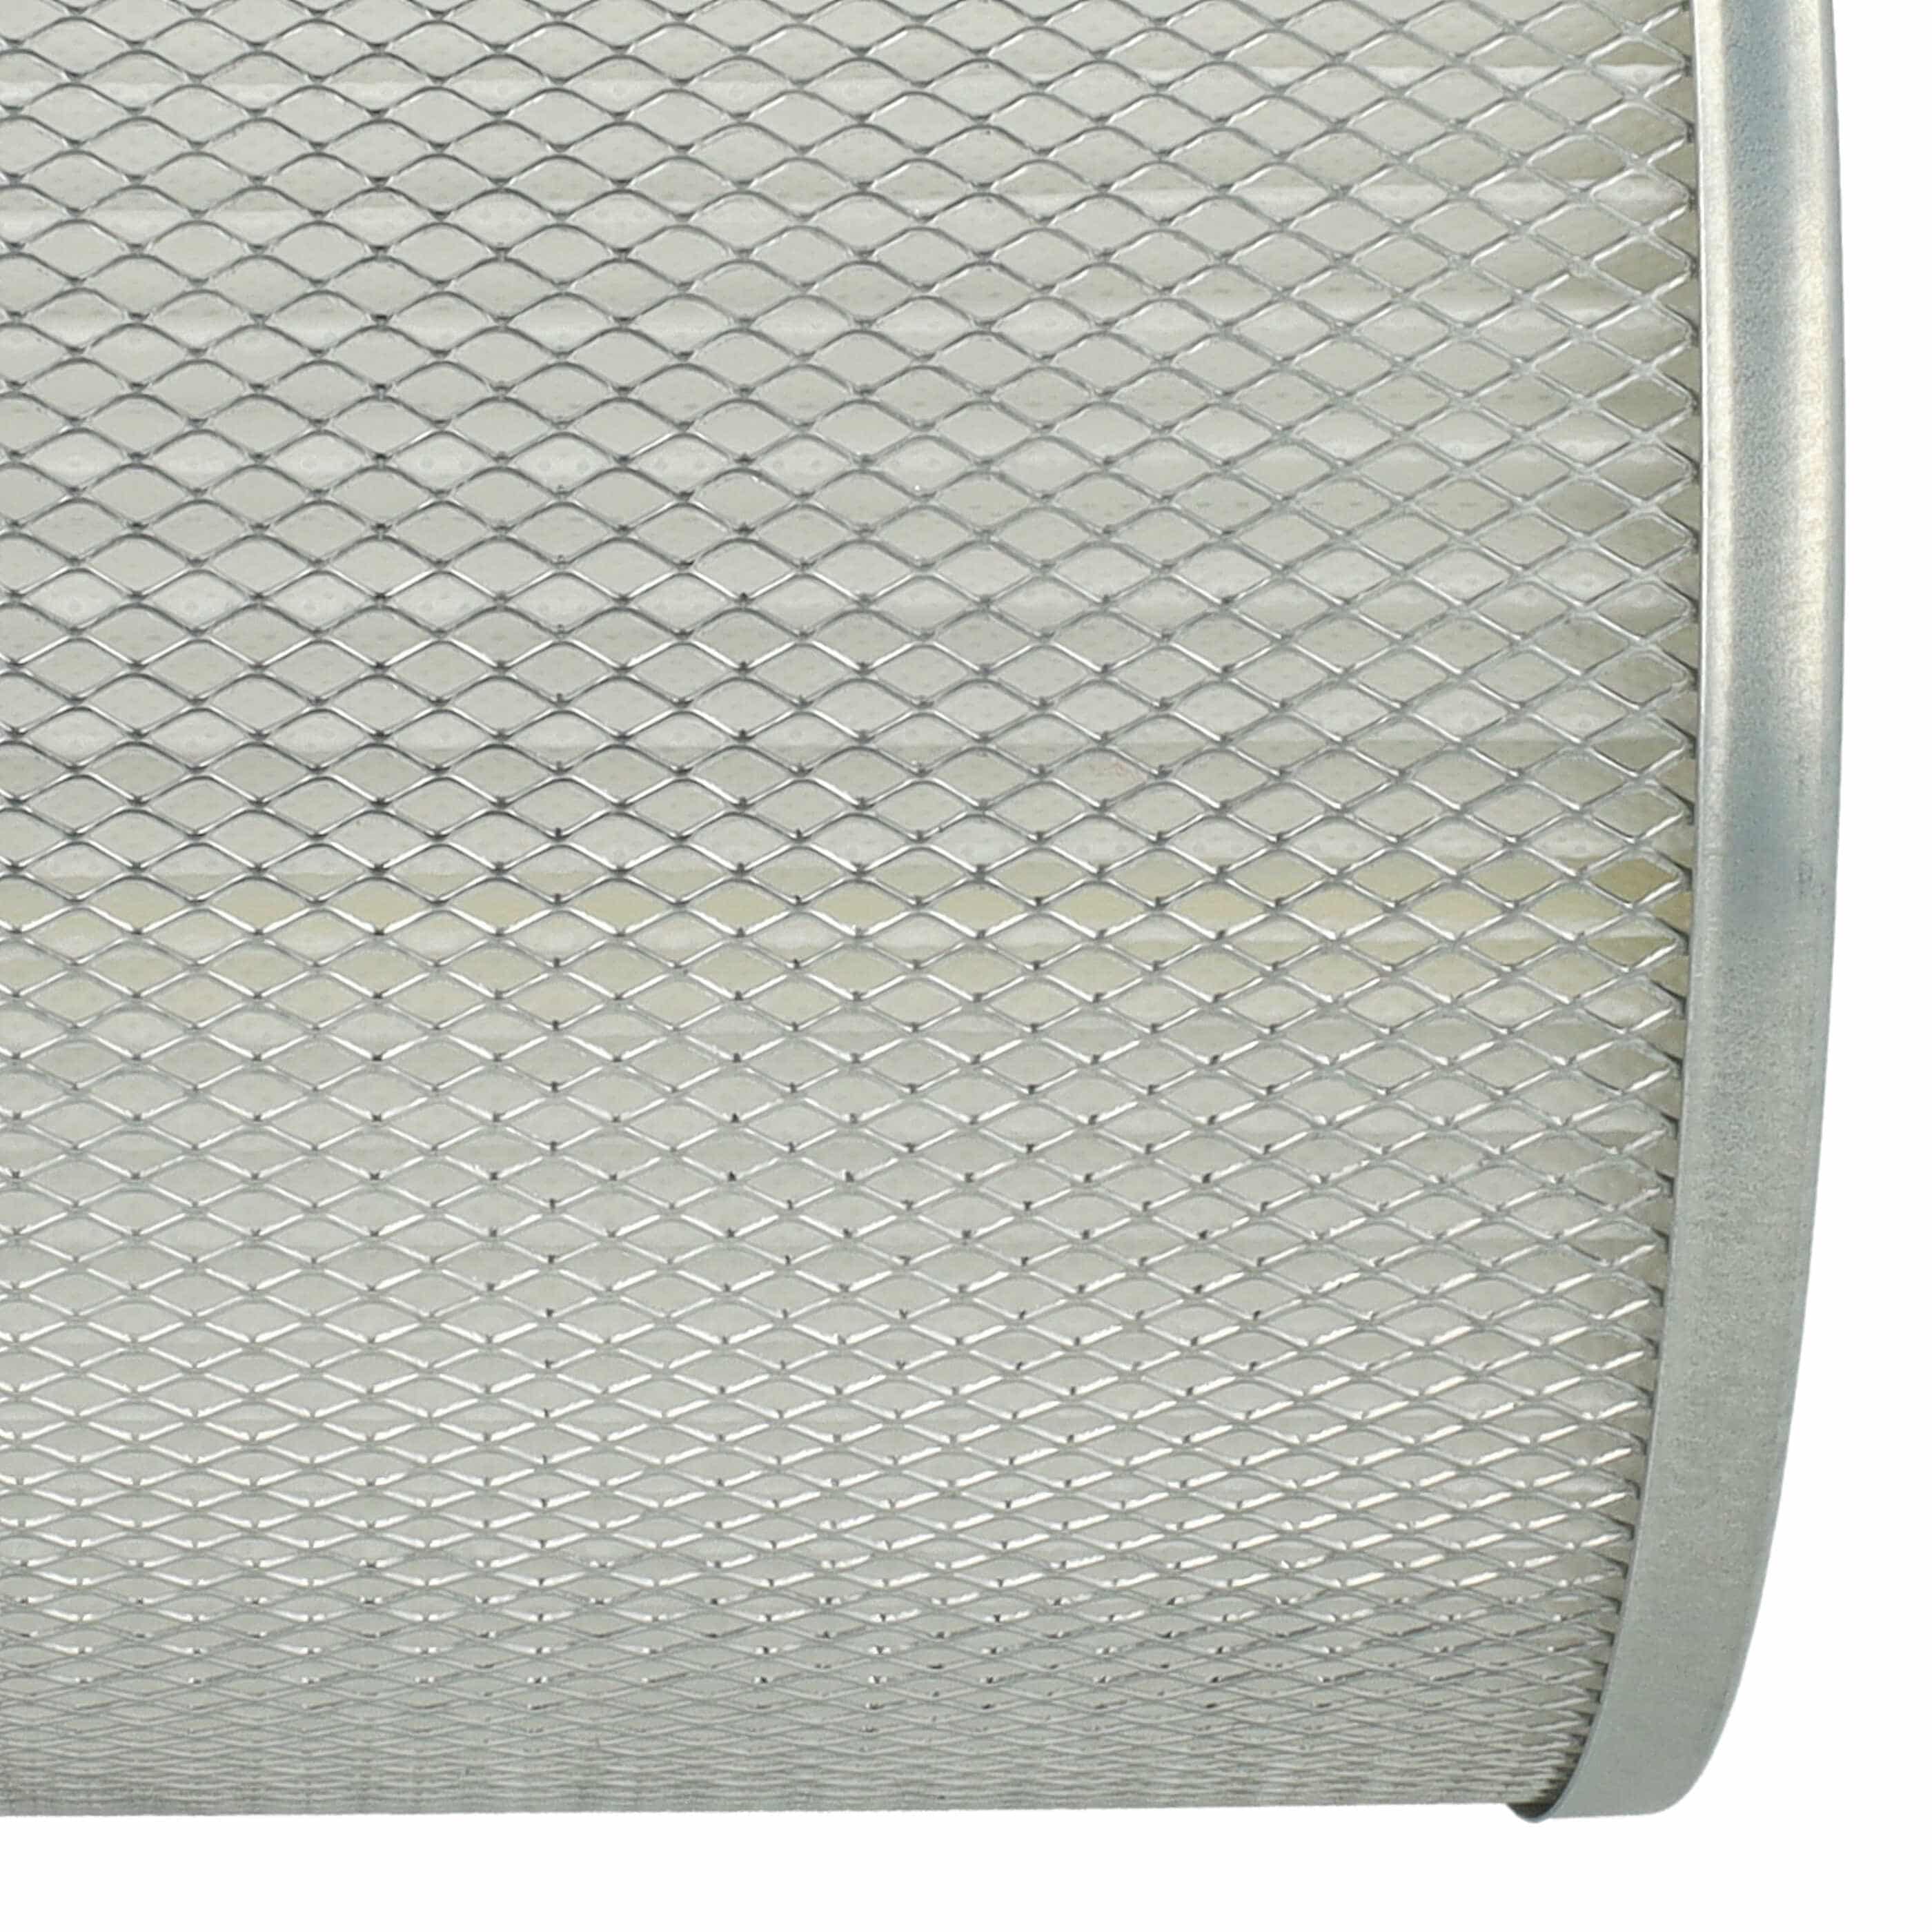 Filtro sostituisce ROWI 212010019 per aspiracenere - filtro a pieghe, bianco / argento